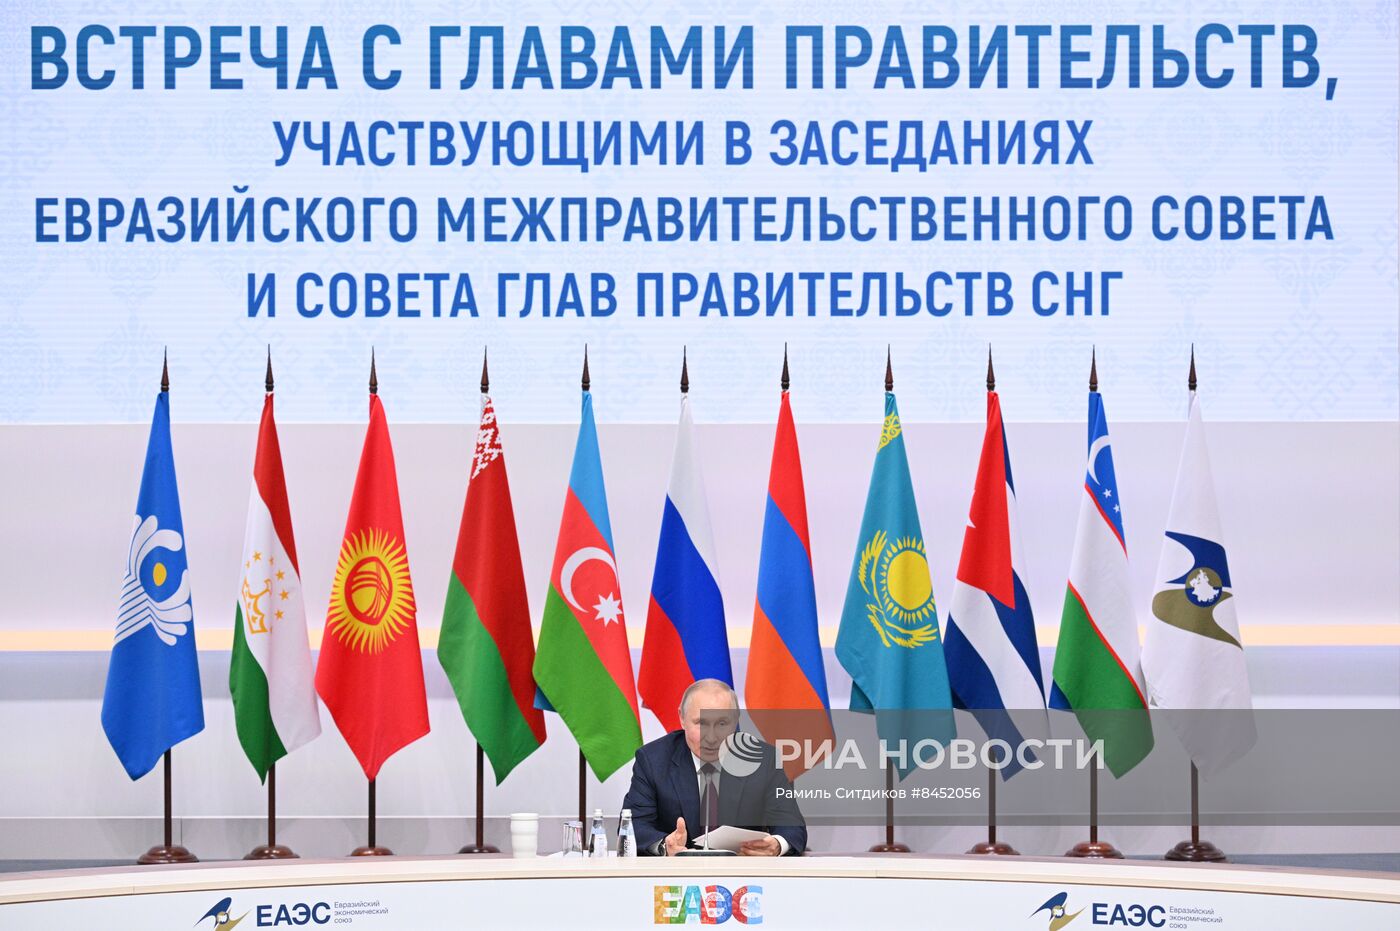 Президент РФ В. Путин провел встречу с главами правительств, участвующих в заседаниях ЕМПС и совета глав правительств СНГ